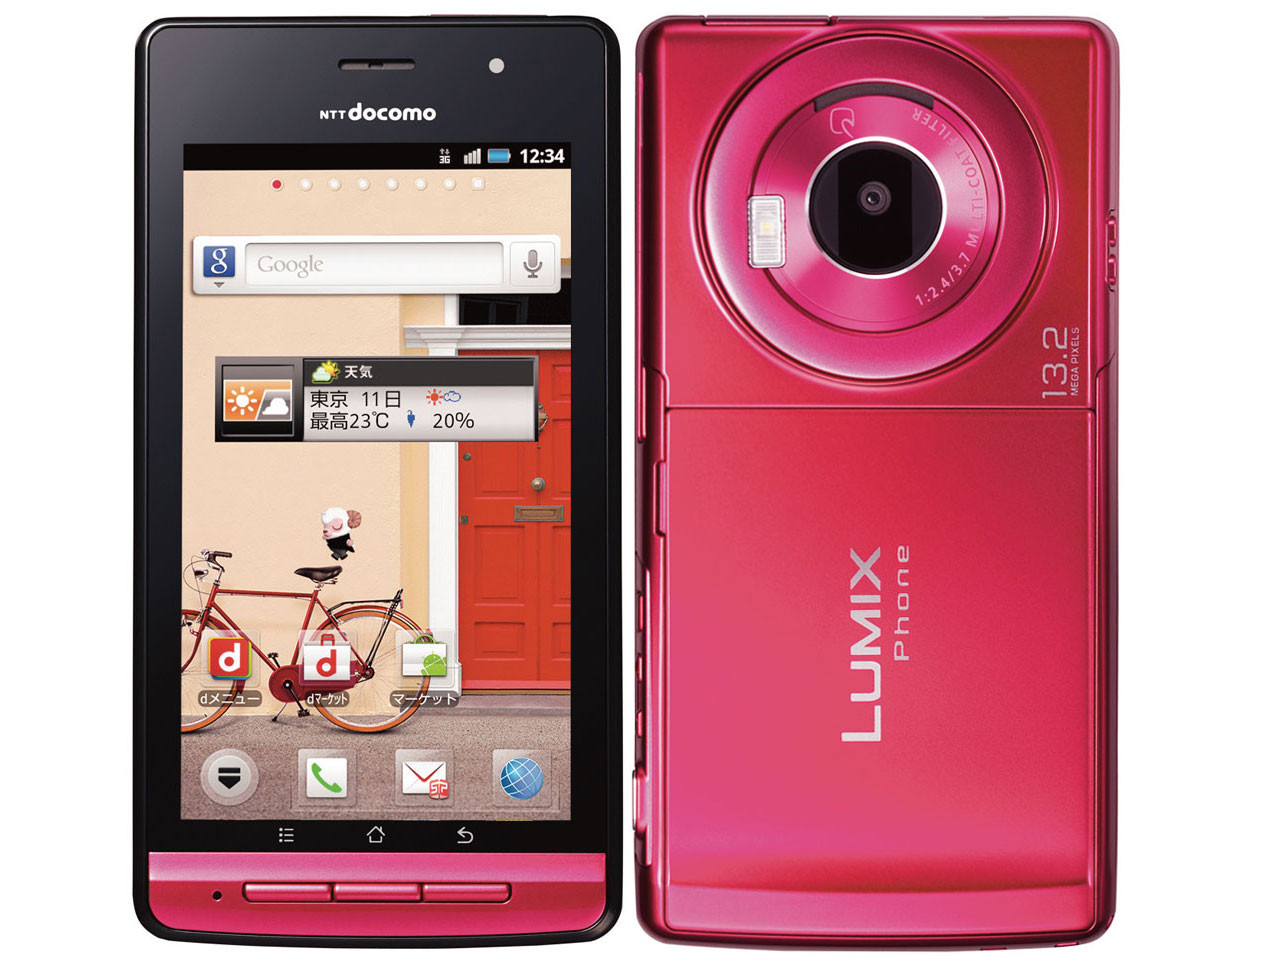 【買付商品】LUMIX Phone docomoP-02D 携帯電話本体